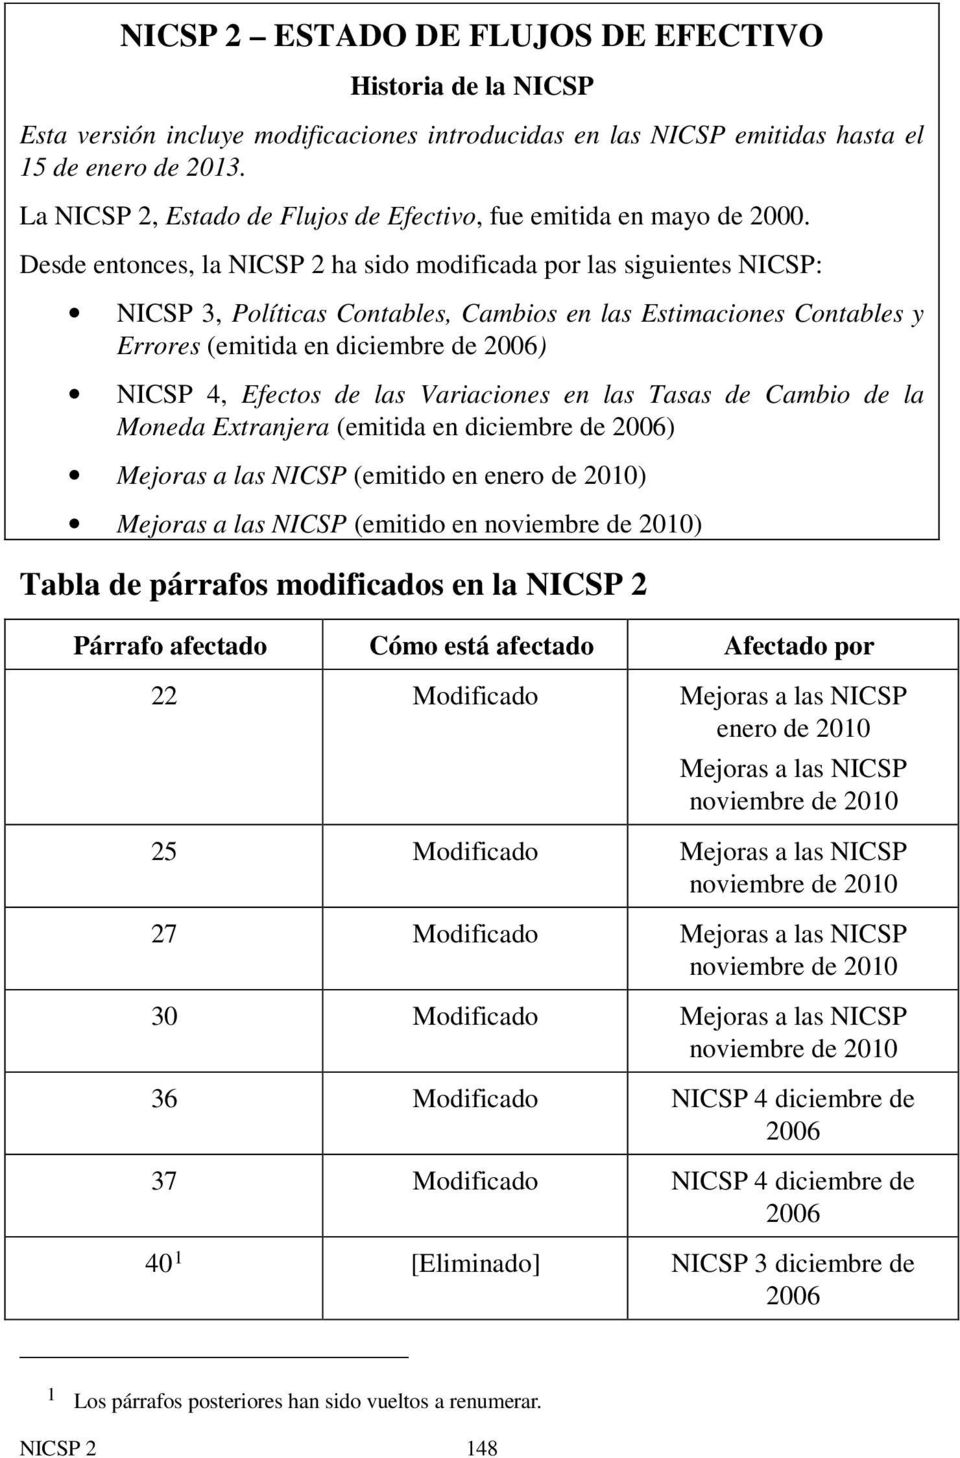 Desde entonces, la NICSP 2 ha sido modificada por las siguientes NICSP: NICSP 3, Políticas Contables, Cambios en las Estimaciones Contables y Errores (emitida en diciembre de 2006) NICSP 4, Efectos